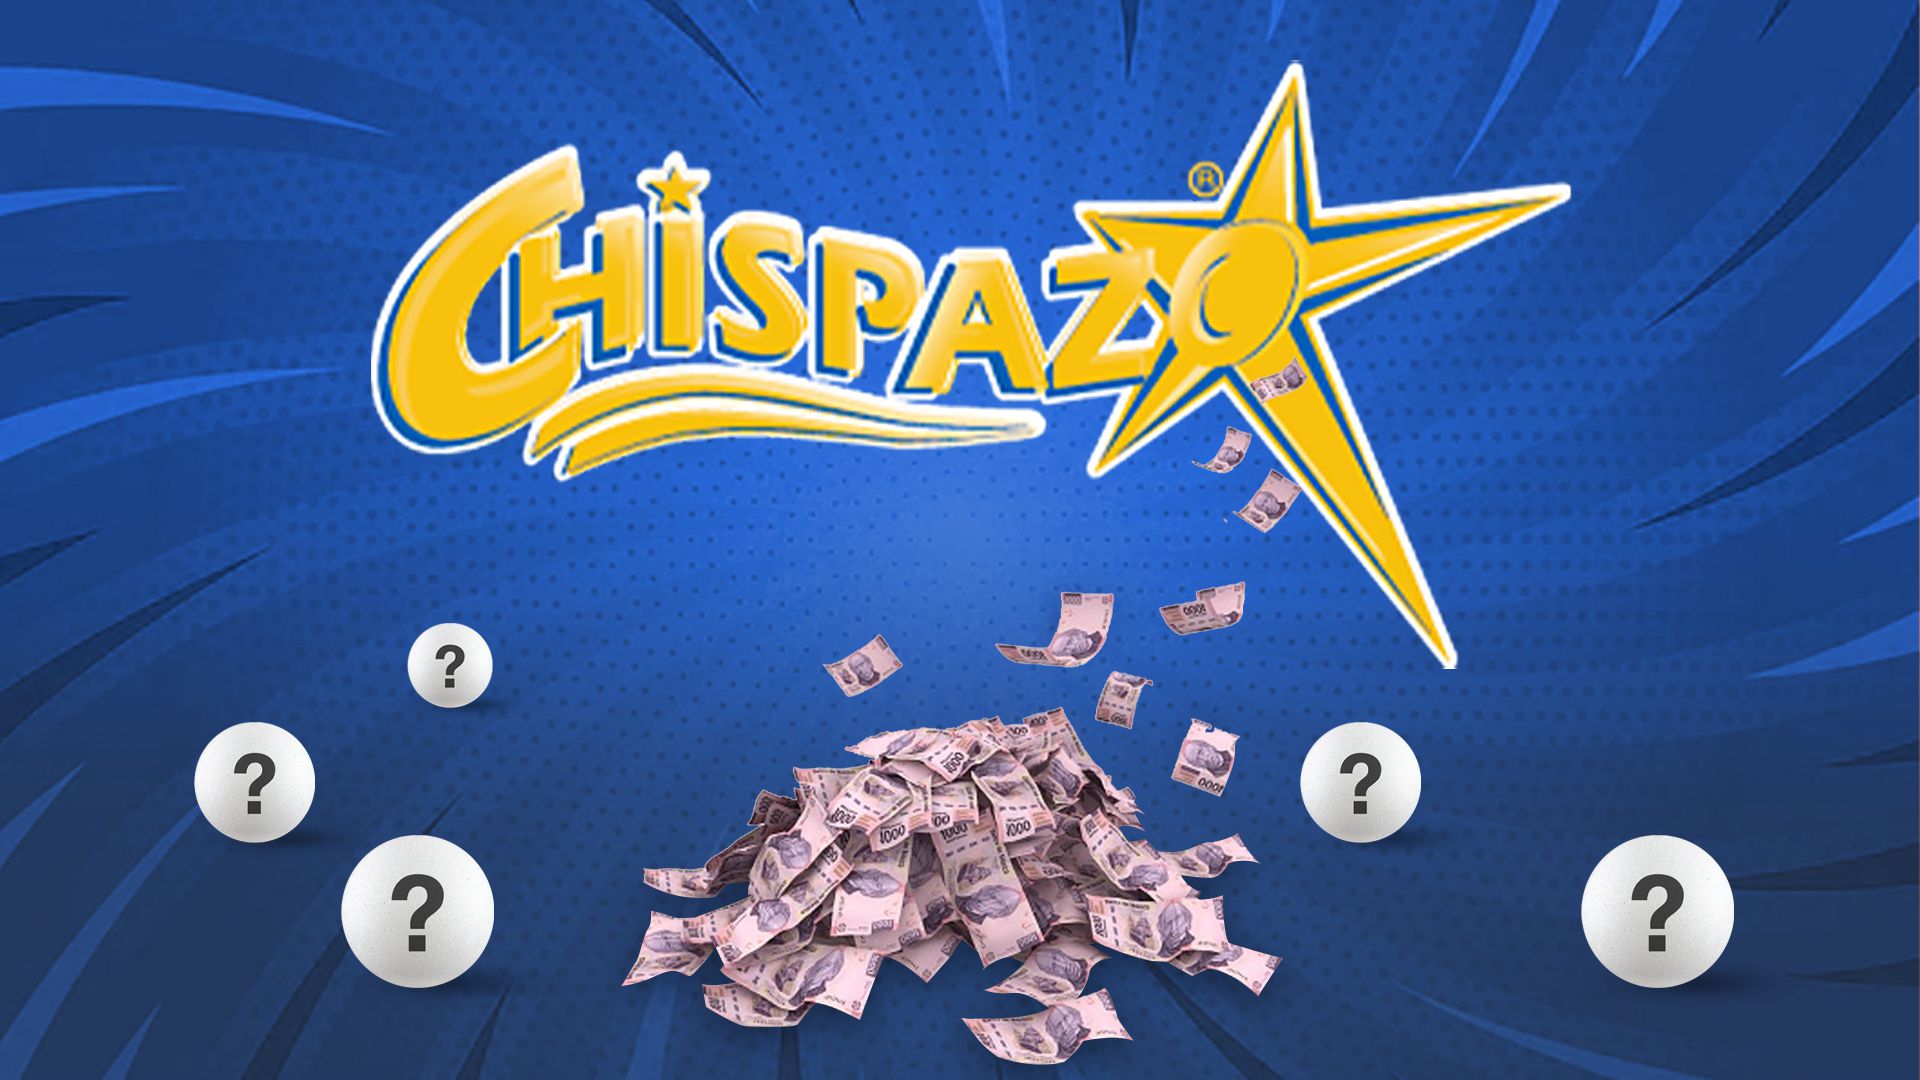 Resultados Chispazo: ganadores del sorteo 9861 del 7 de junio